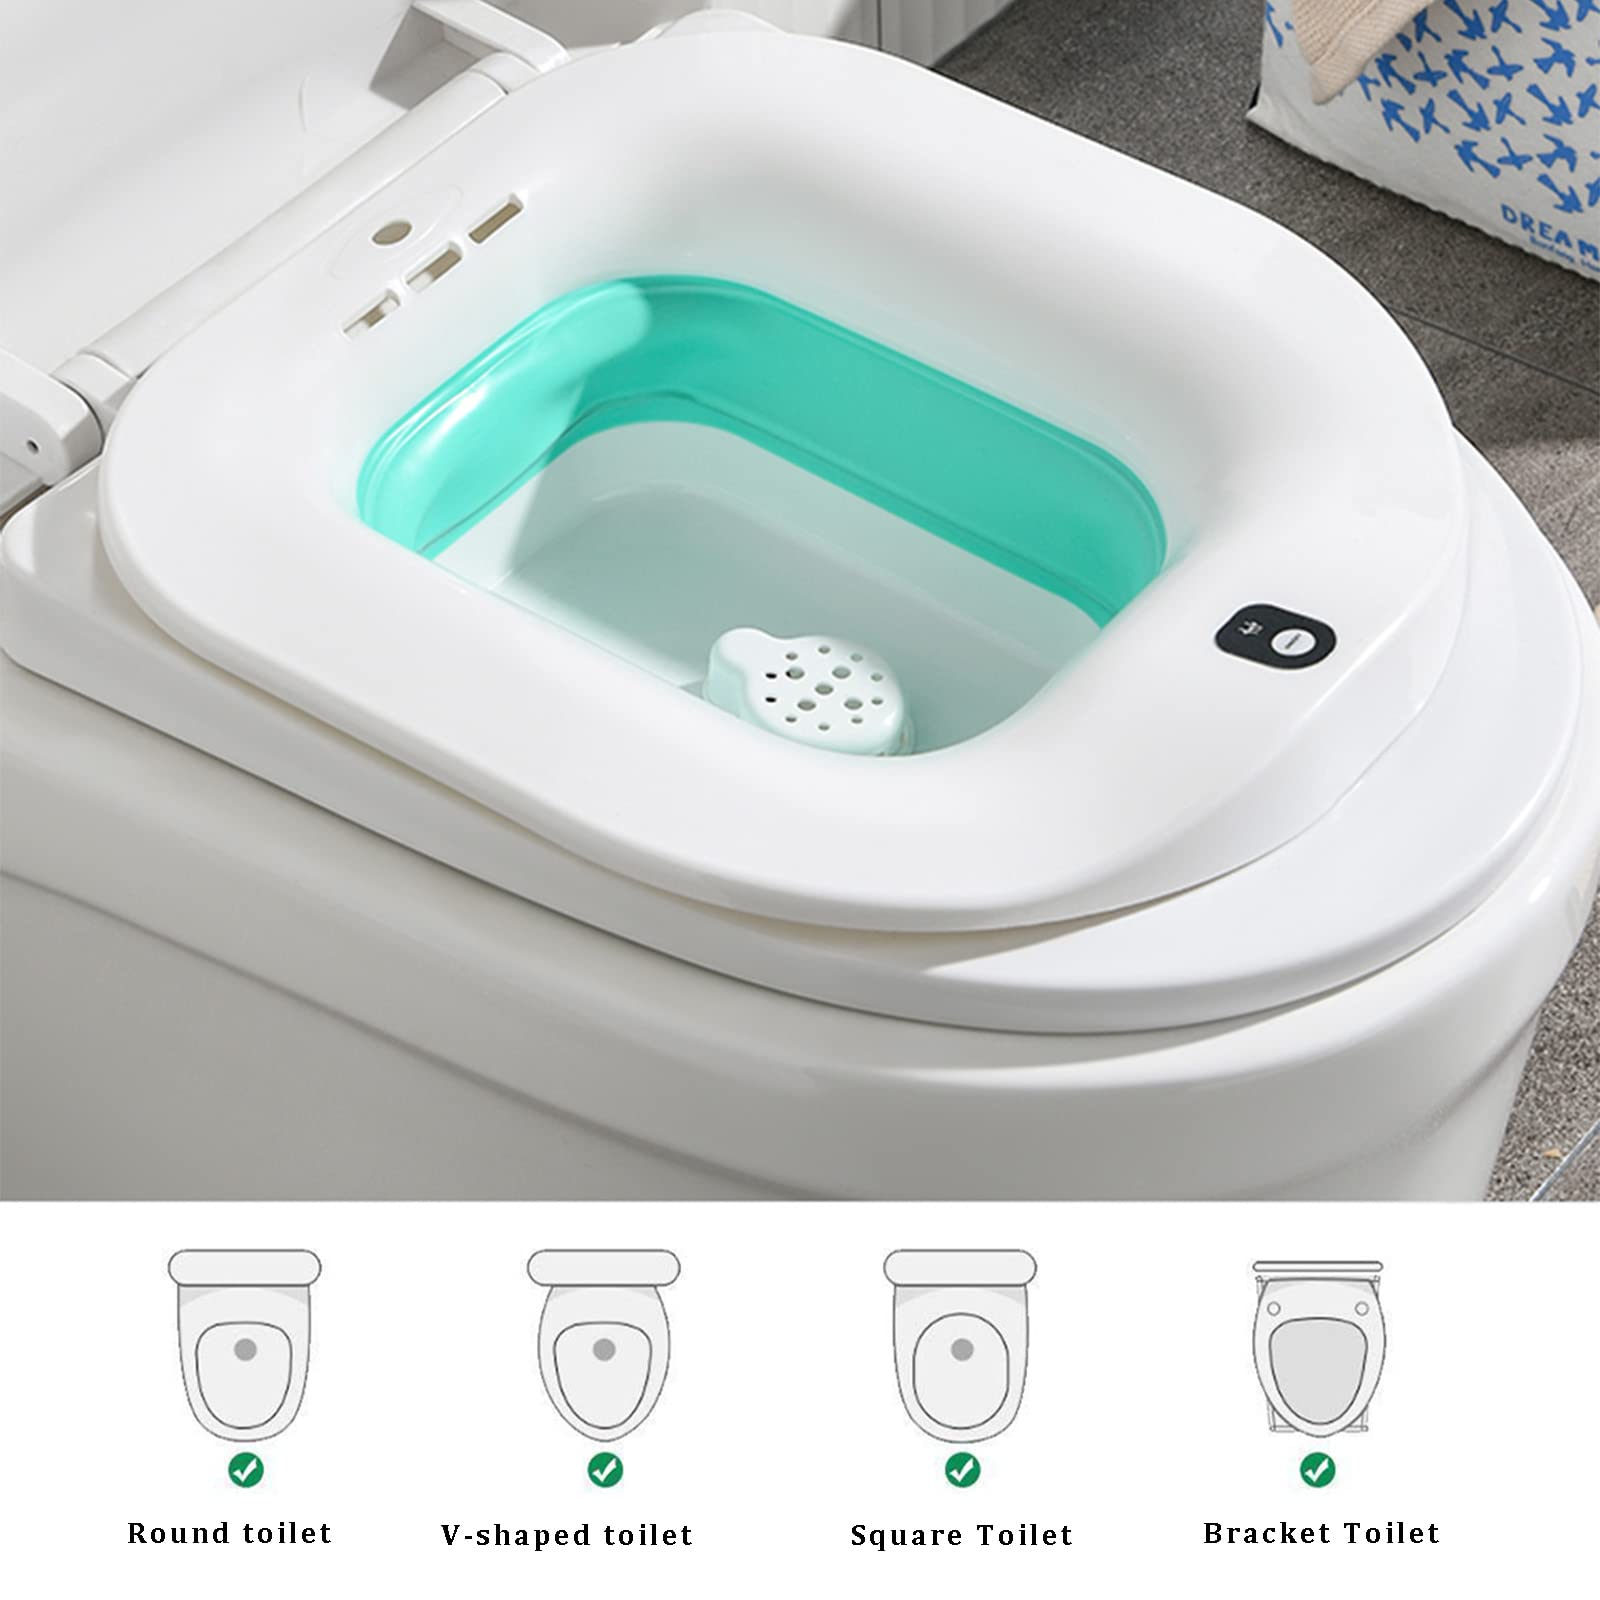 Electric Toilet Seat-Electric Sitz Bath for Hemorrhoids，Foldable Sitz Baths for Postpartum Care,Postpartum Care Steam Seat，Suitable for Pregnant Women, Elderly (Bubble Mode)